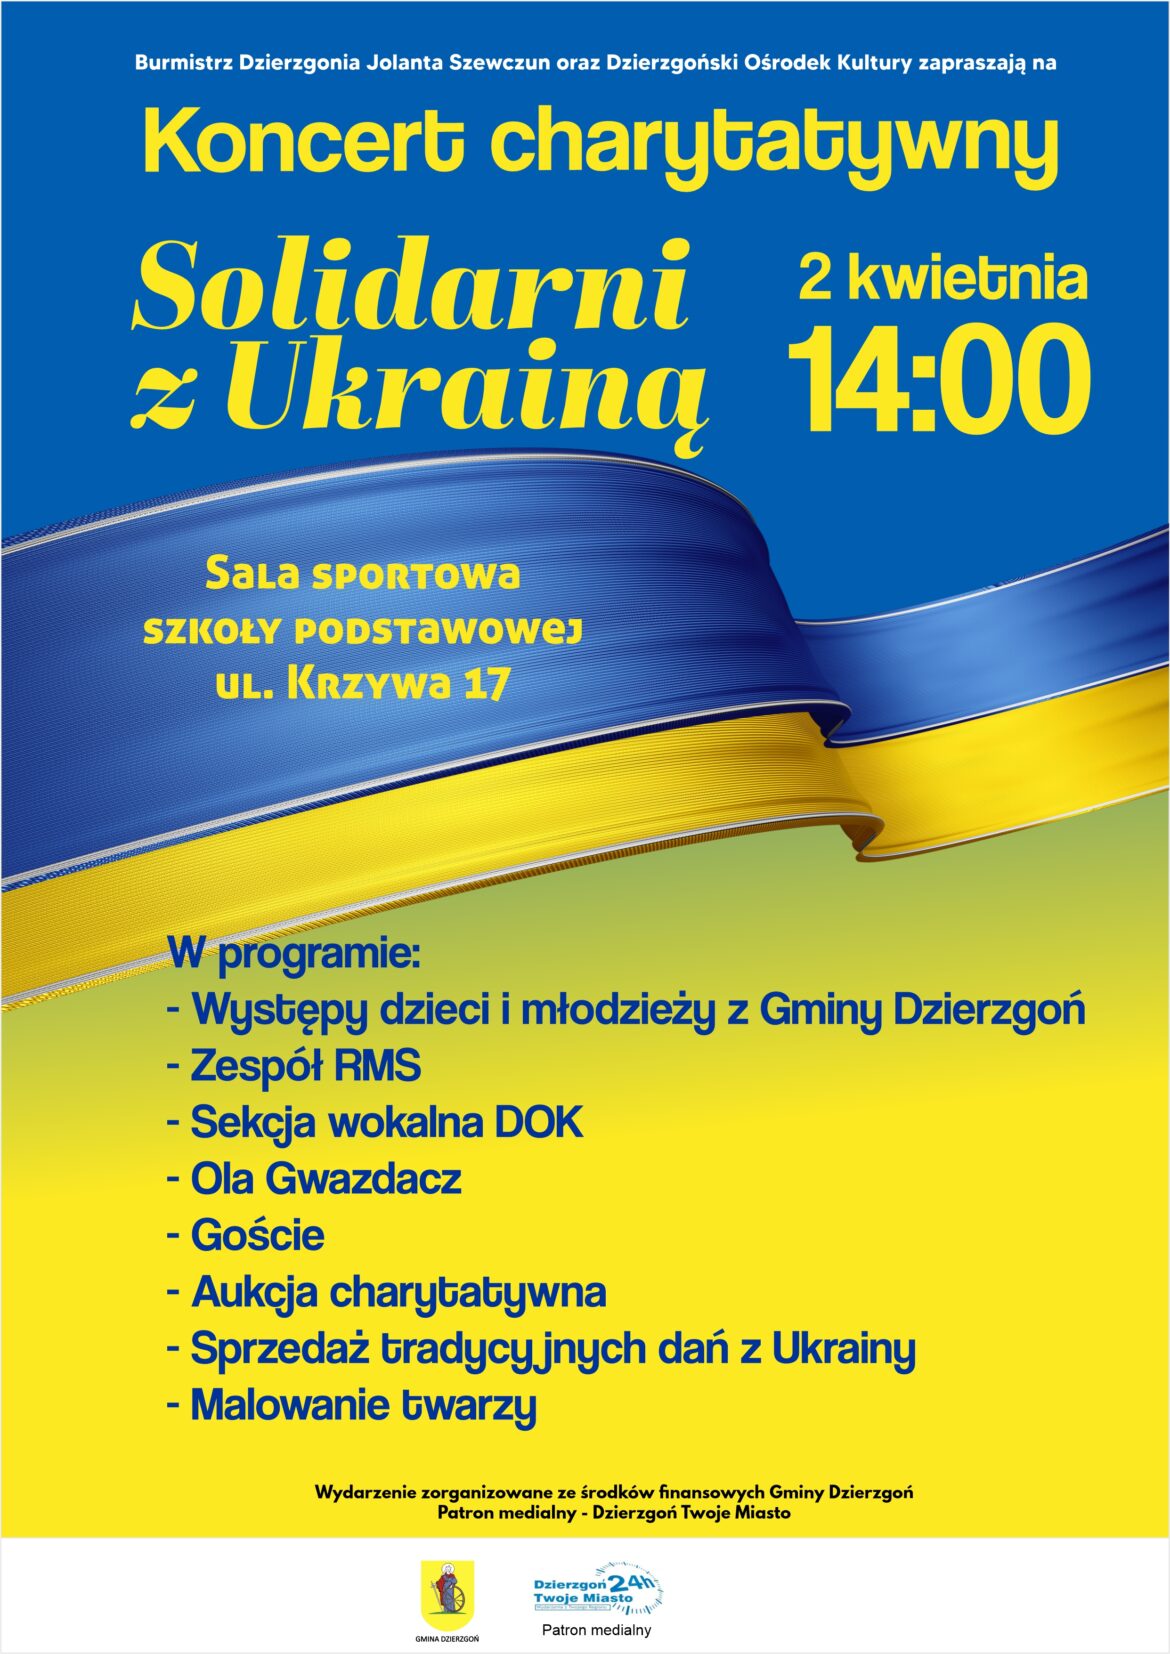 Burmistrz Dzierzgonia Jolanta Szewczun zaprasza na koncert charytatywny „Solidarni z Ukrainą”